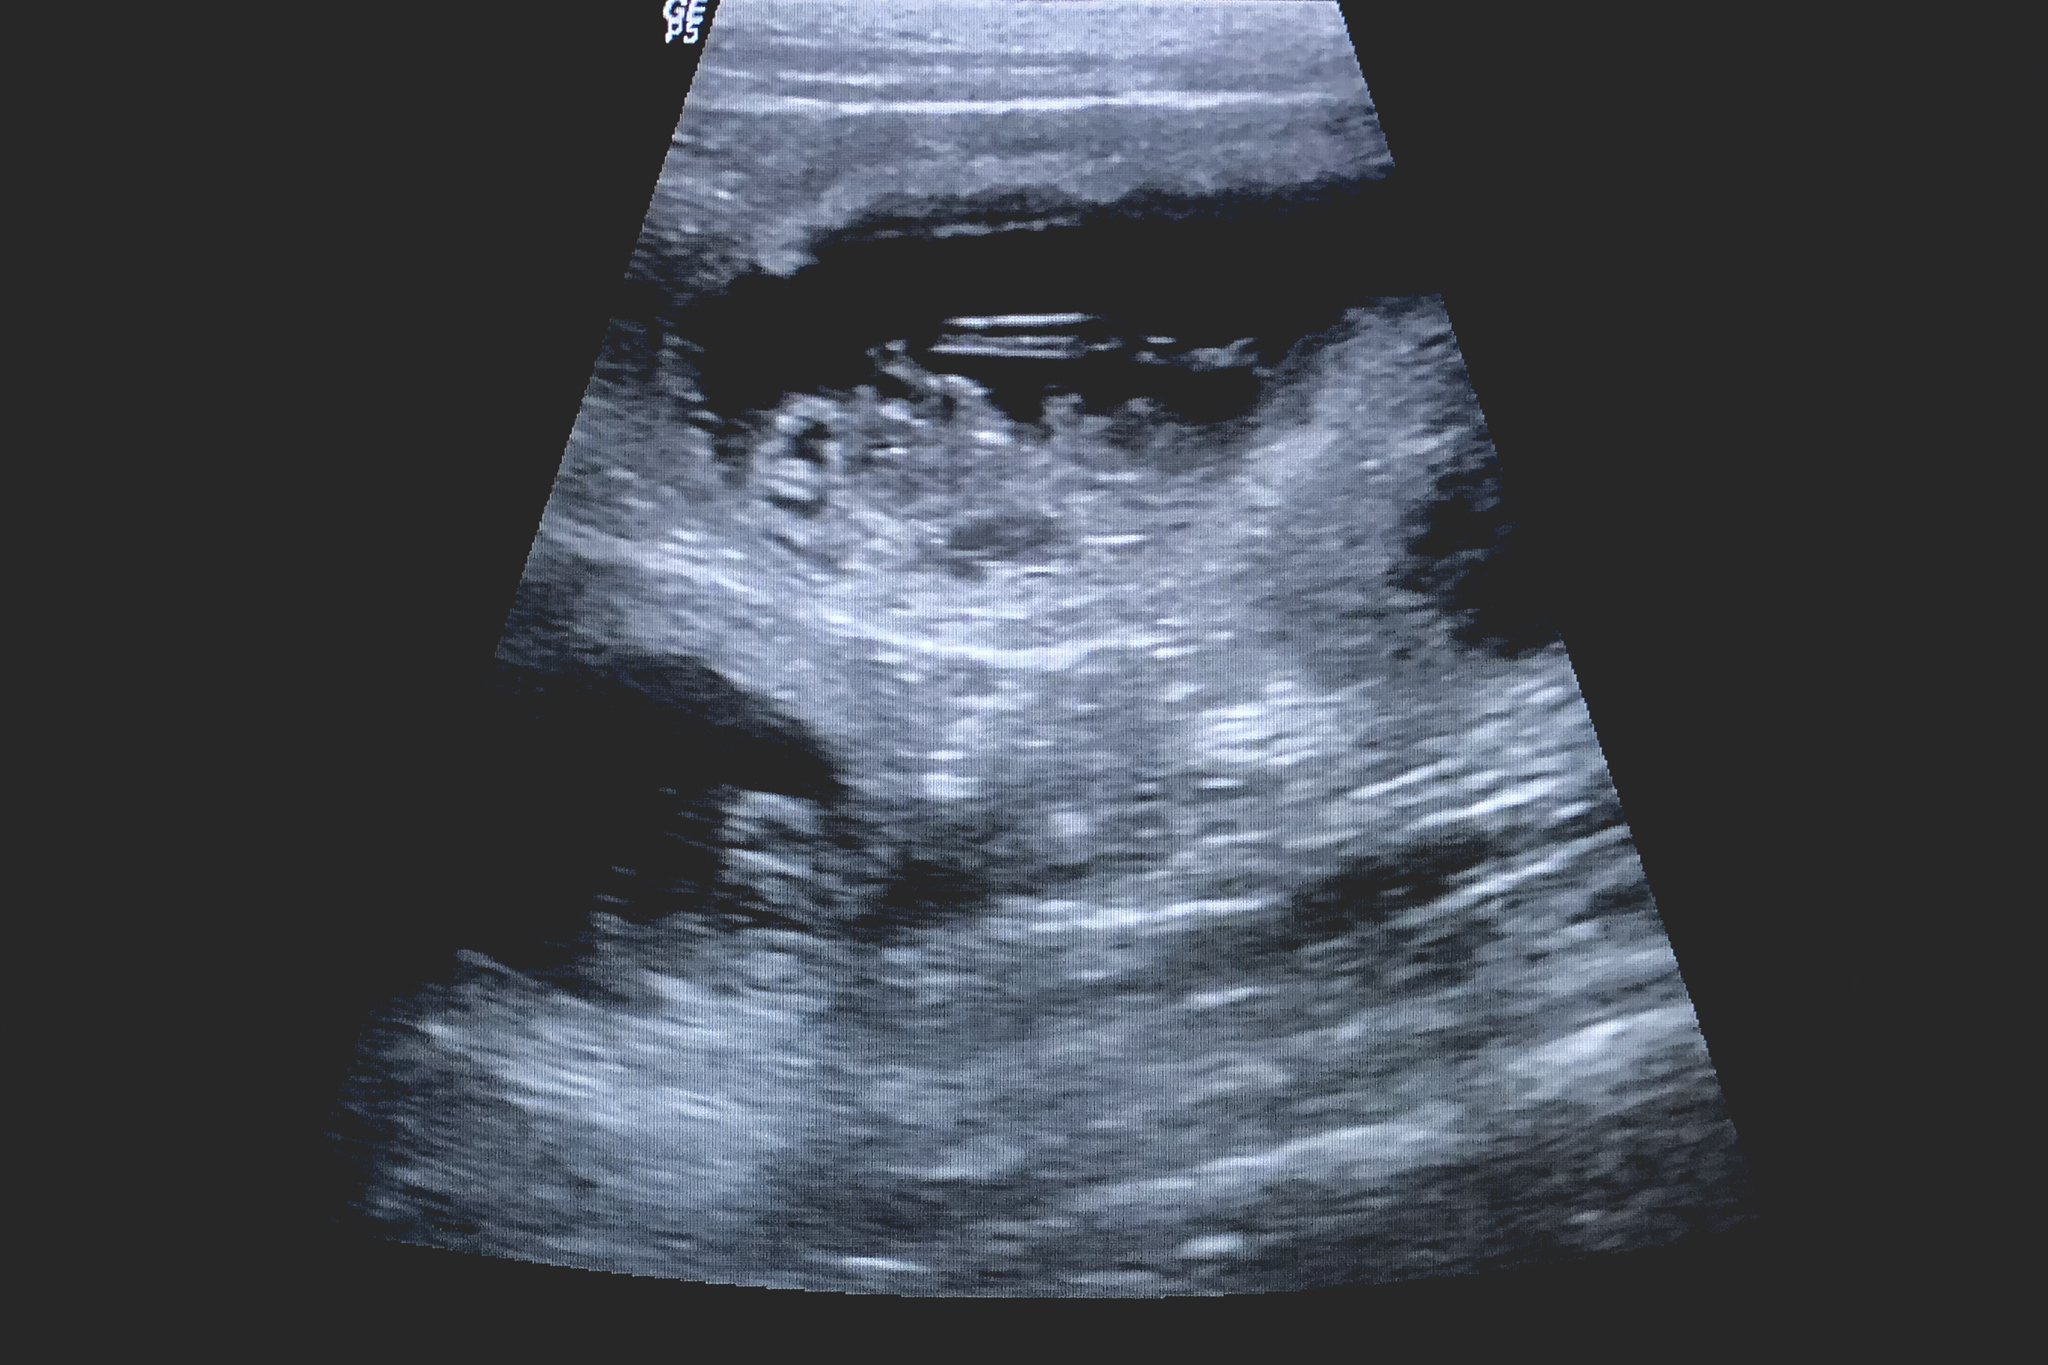 Ultraschallbild einer trächtigen Border Collie Hündin